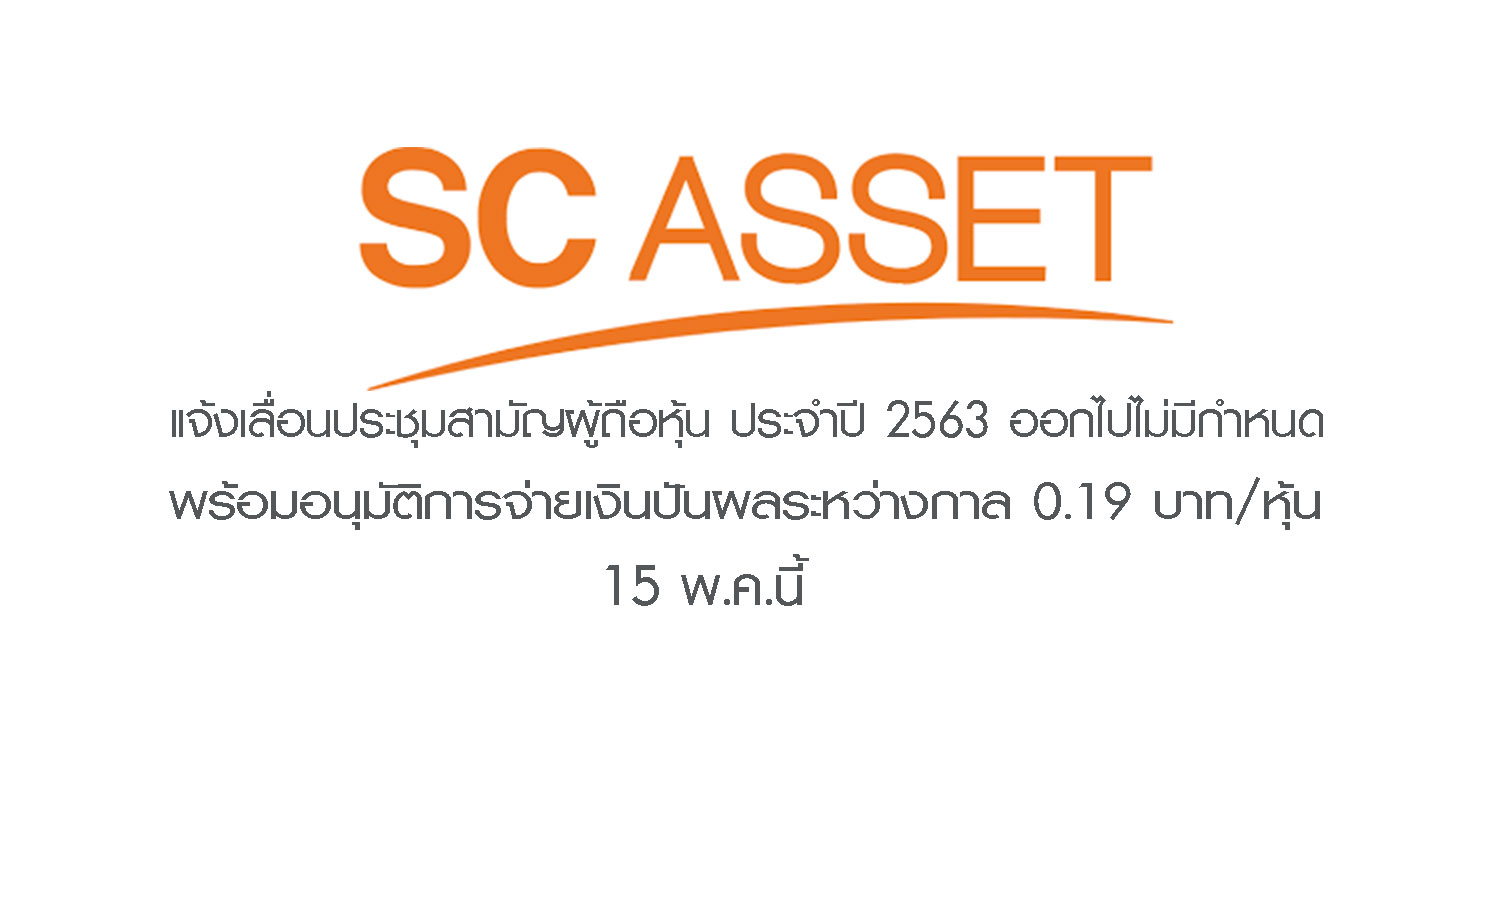 SC Asset  แจ้งเลื่อนประชุมสามัญผู้ถือหุ้น ประจำปี 2563 ออกไปไม่มีกำหนด พร้อมอนุมัติการจ่ายเงินปันผลระหว่างกาล 0.19 บาท/หุ้น 15 พ.ค.นี้